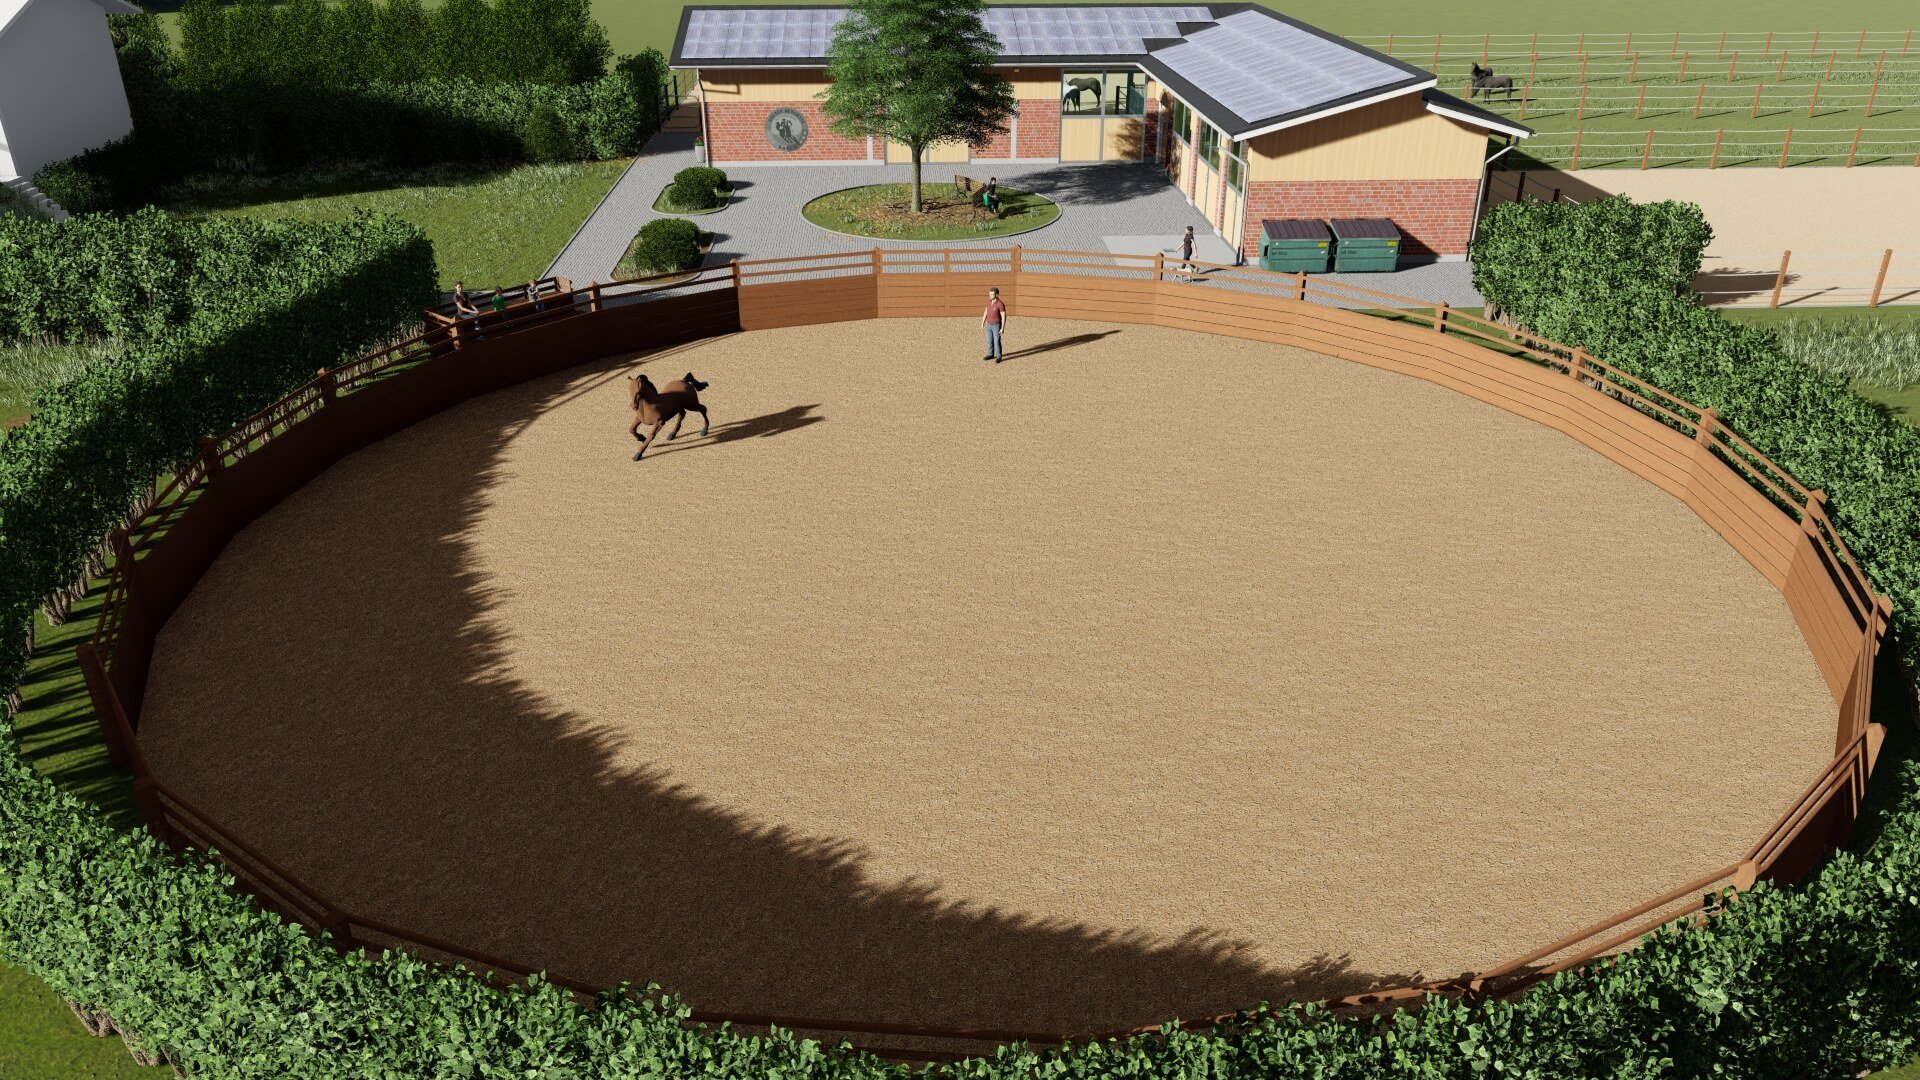 Übersicht über einen Roundpen für Pferde mit einem Trainer und Pferd in Aktion, integriert in eine größere Anlage mit Stallungen und Gebäuden im Hintergrund, entworfen von EQUUS DESIGN PLANUNG.